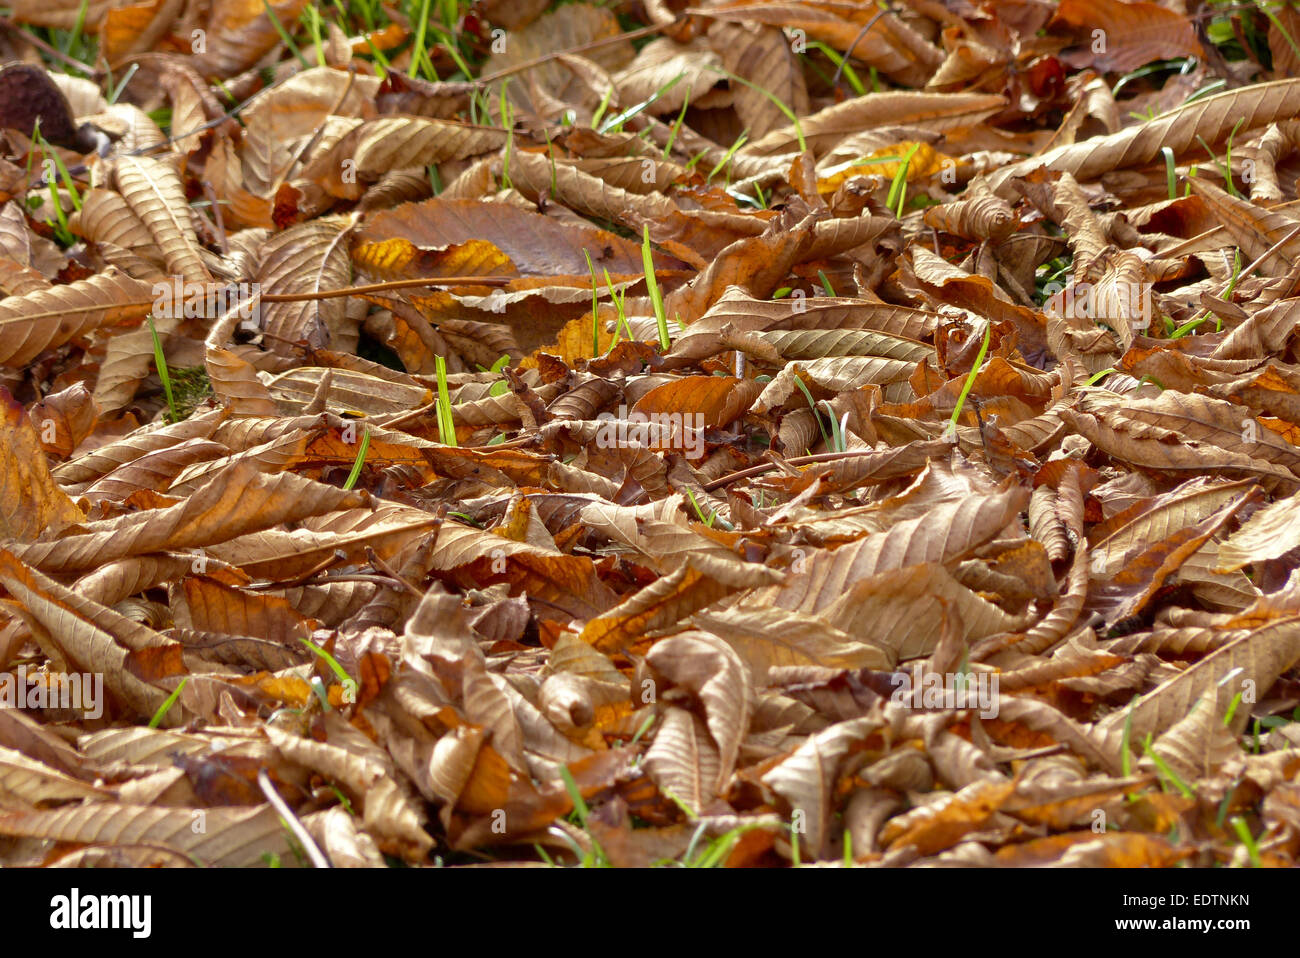 Herbstlaub bin Boden, Herbst Blätter auf den Boden, Herbst, Ernte, Herbst, Blätter, Laub, Buche Blätter, Saison, bunt, Detail, Stockfoto